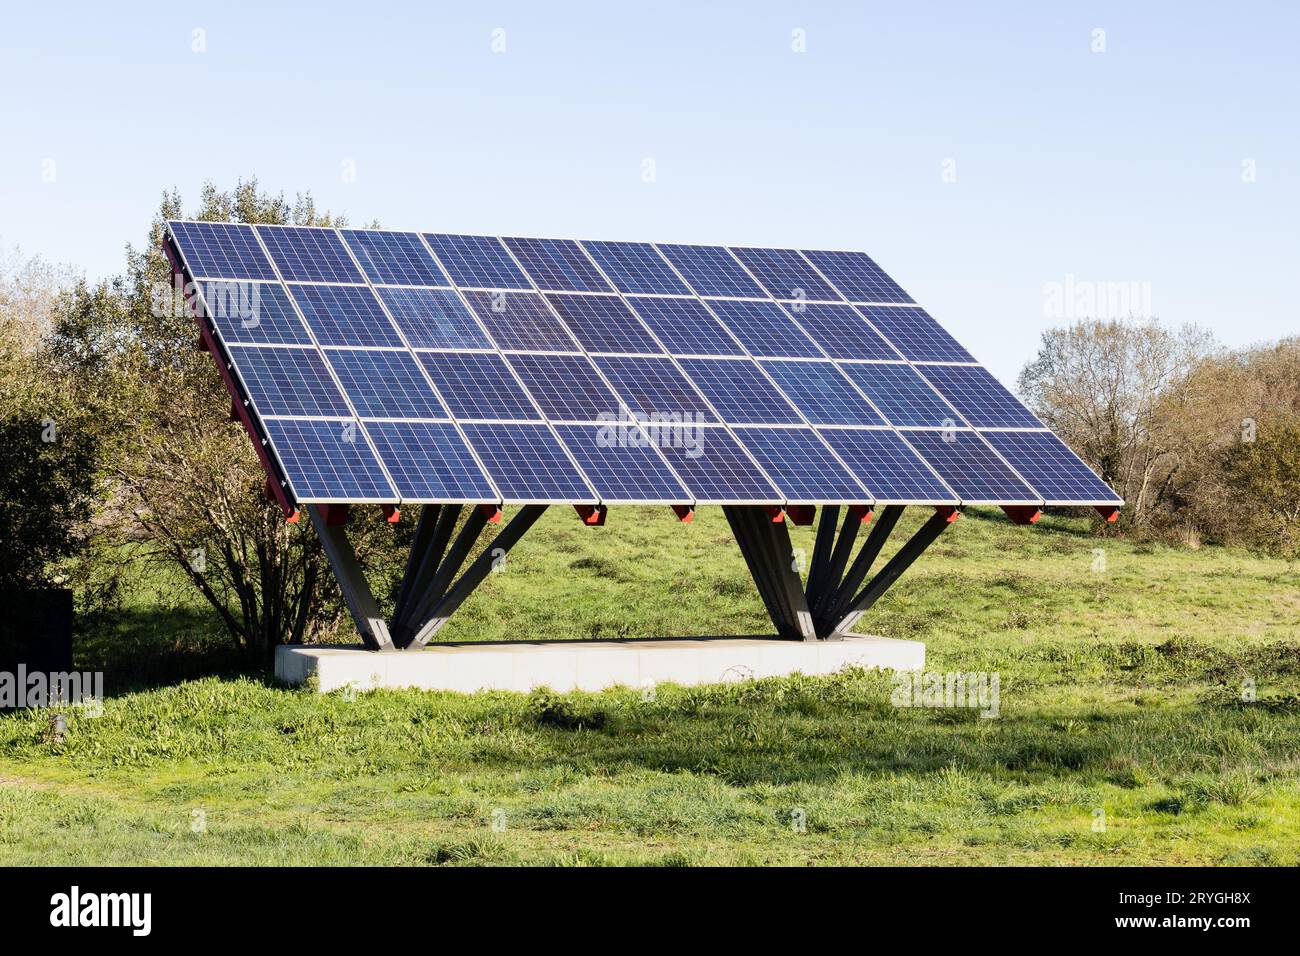 Solarpaneele, die auf einer Metallkonstruktion in einem Feld installiert sind Stockfoto